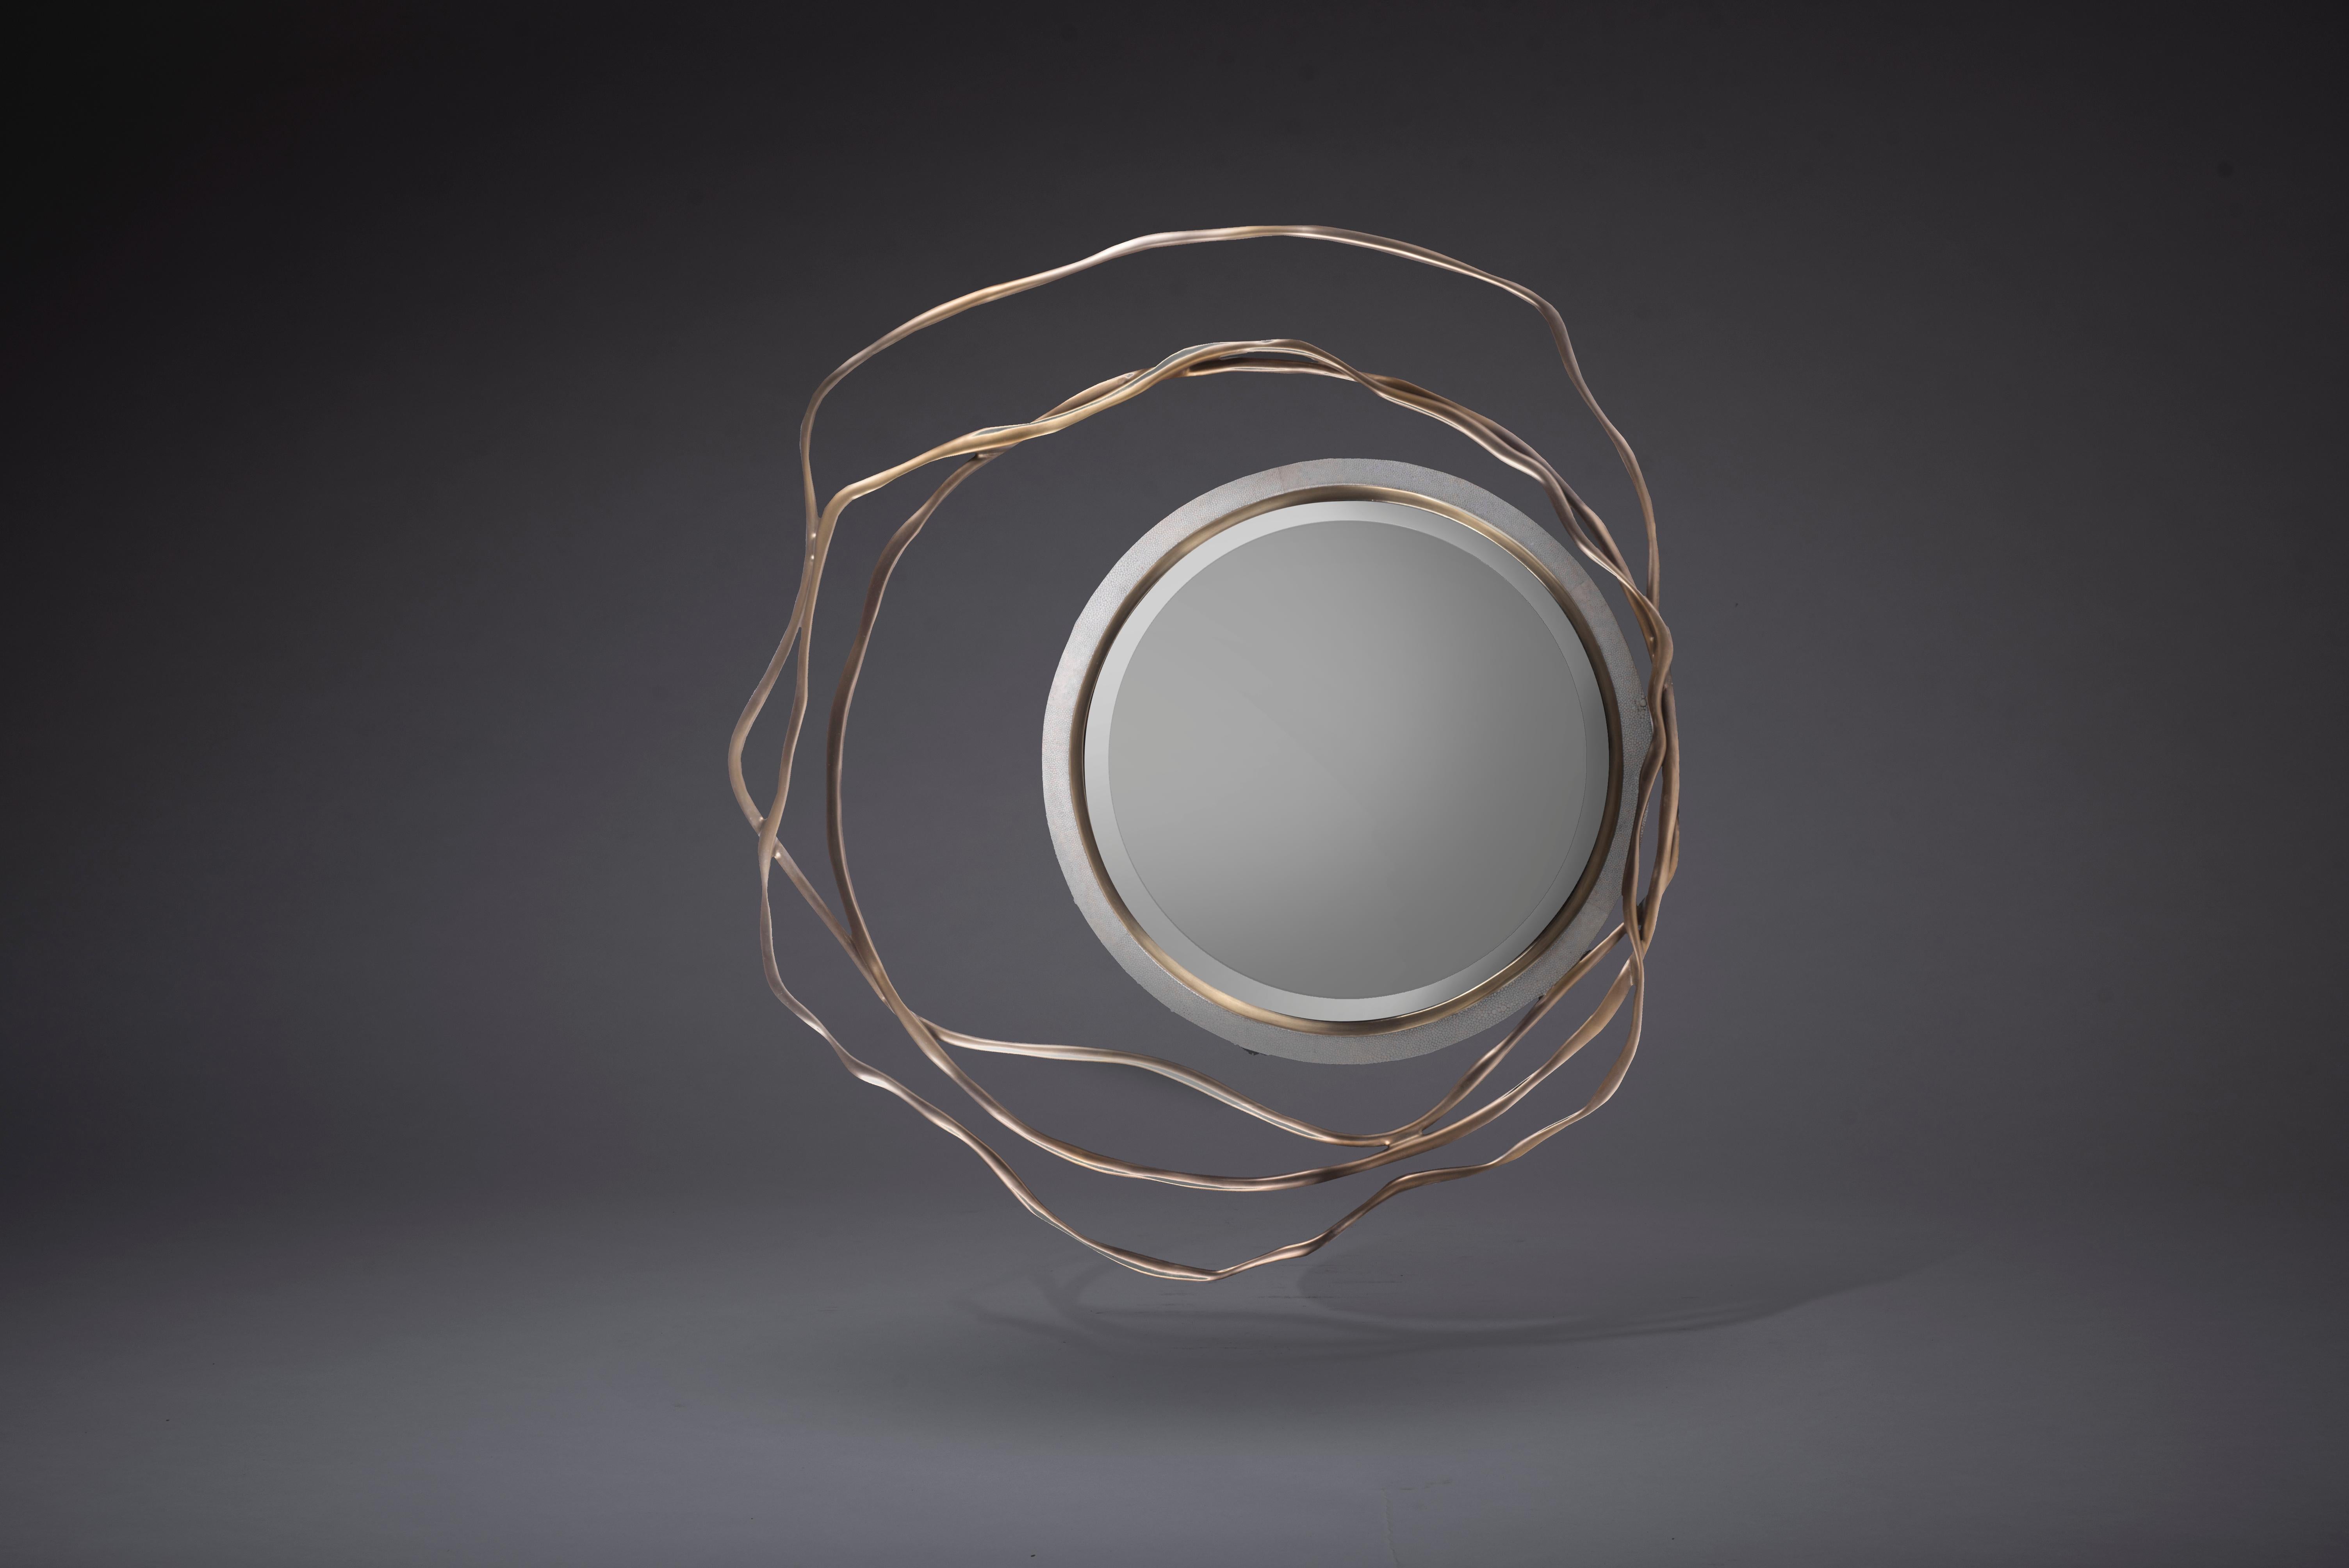 Der Spiegel Dargelos ist mit seinen ätherisch inspirierten Wurzeln ein Statement. Die Verflechtung der gedrehten Messingdrähte aus Bronze und Porzellan mit dem kreisförmigen, cremefarbenen Rahmen des Spiegels schafft eine wahrhaft skurrile